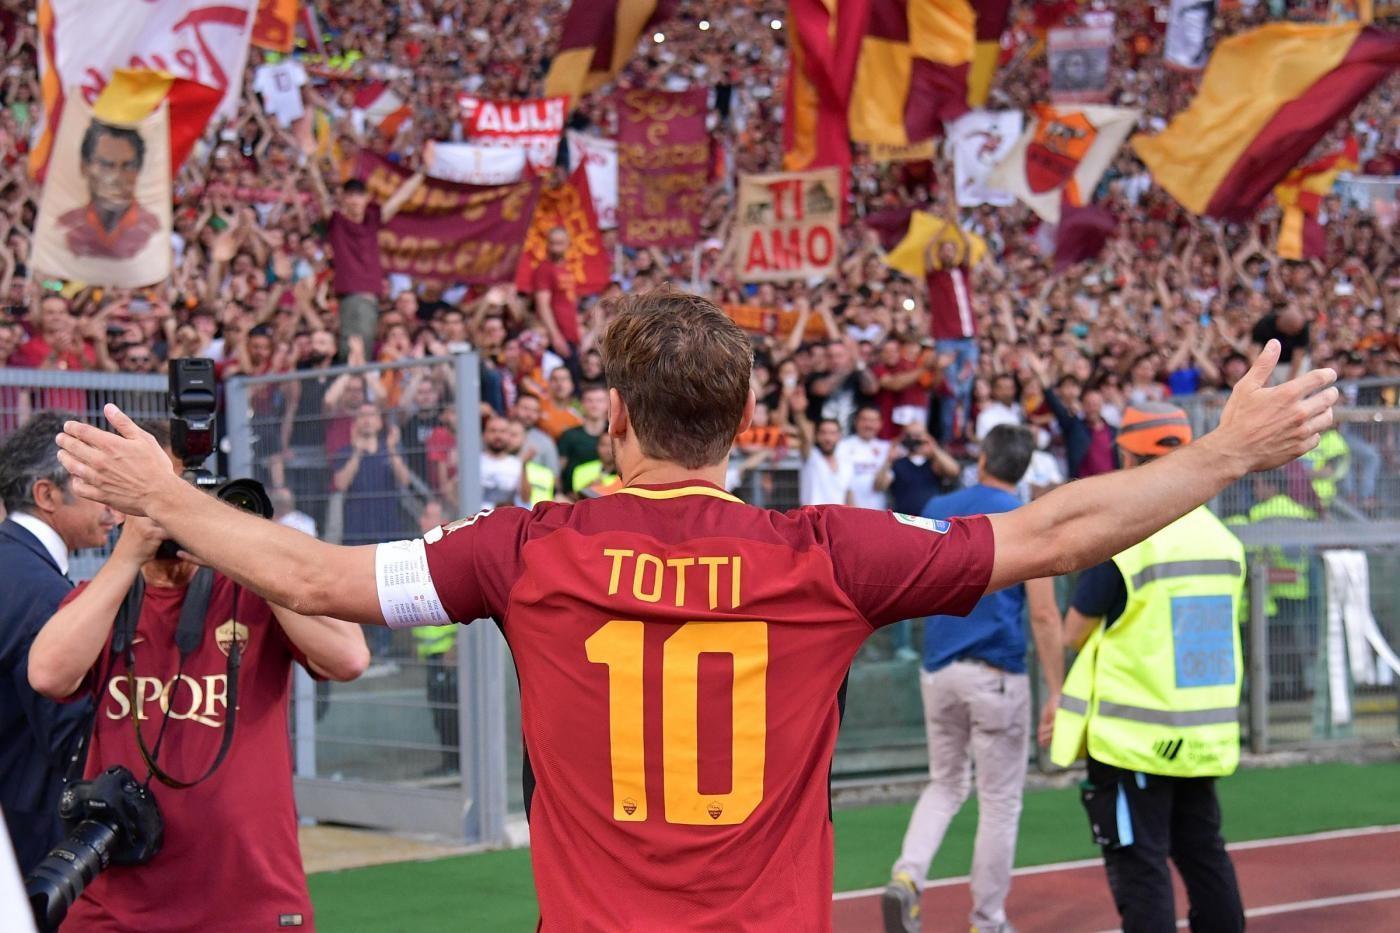 FOTO - Totti ricorda il suo addio al calcio: 